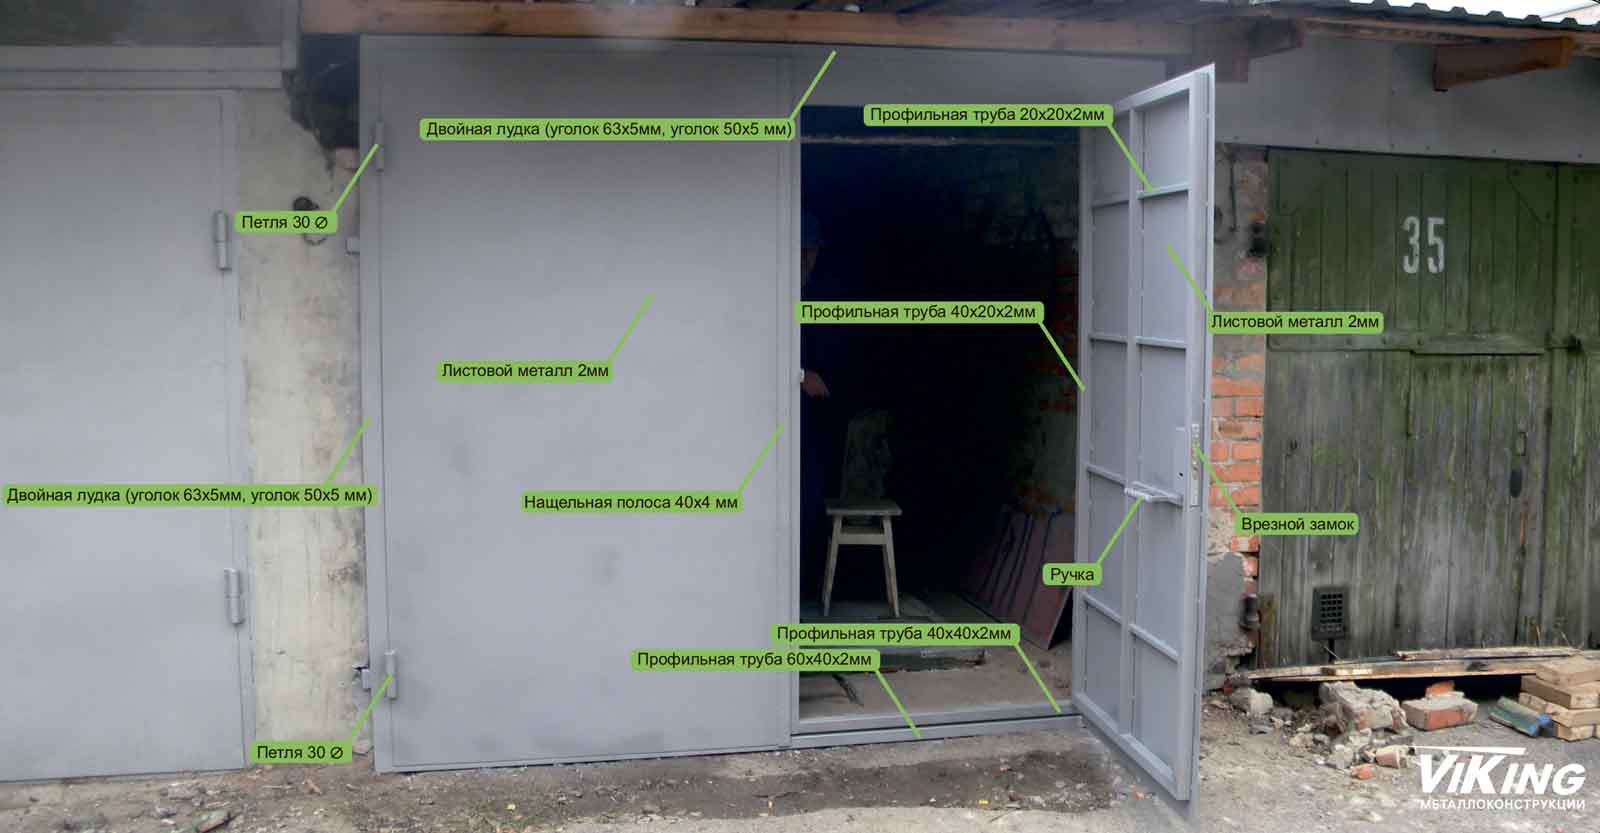 Металлические ворота для гаража: как сварить из профильной трубы, как покрасить и каким цветом, изготовление гаражных распашных железных ворот, чертежи